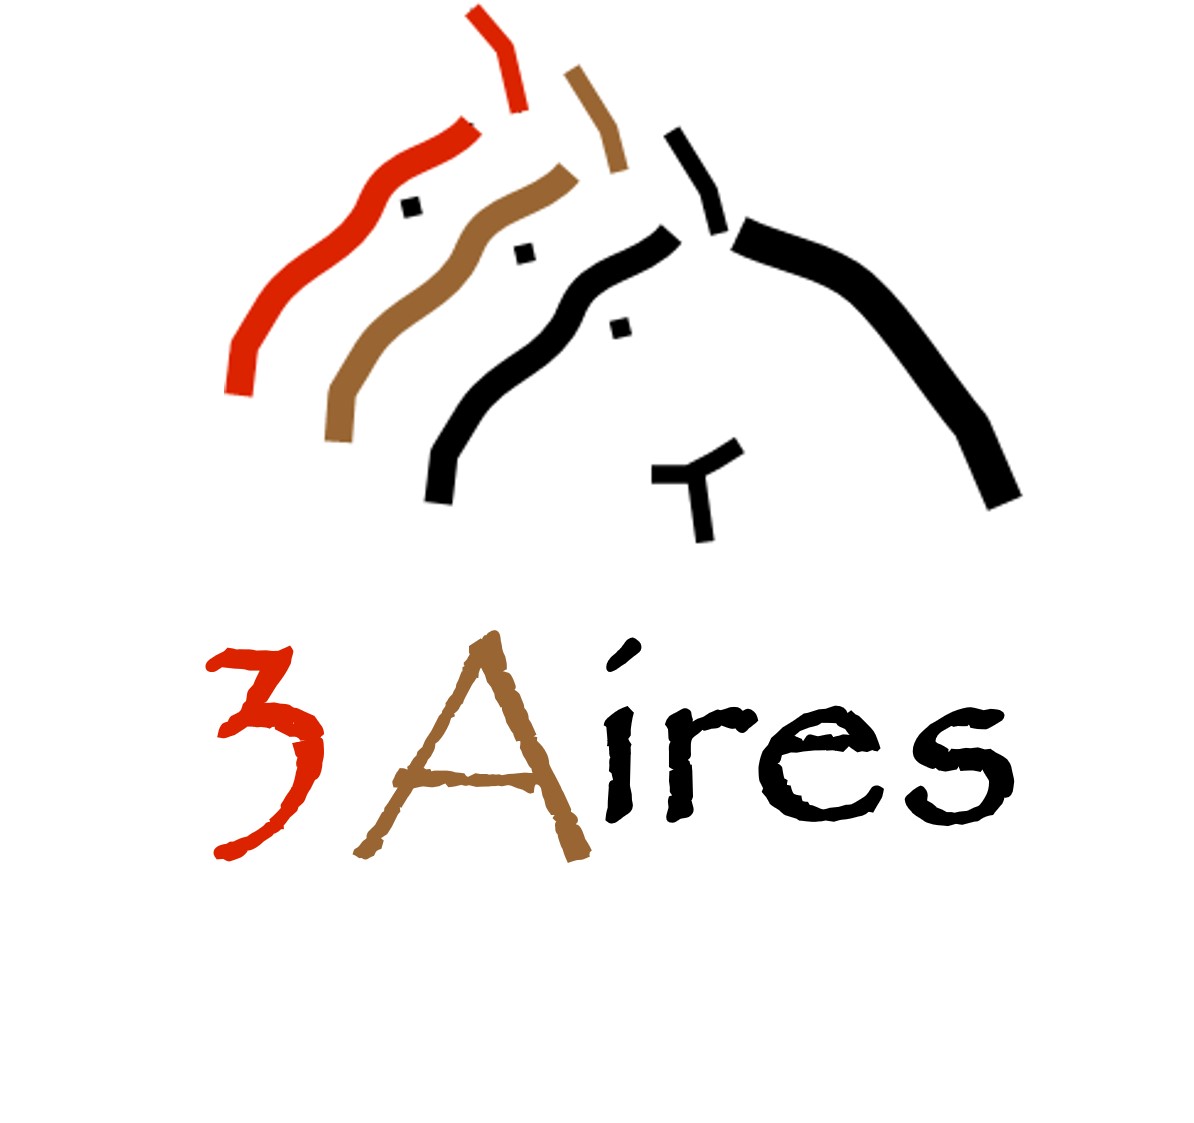 Logotip_3aires